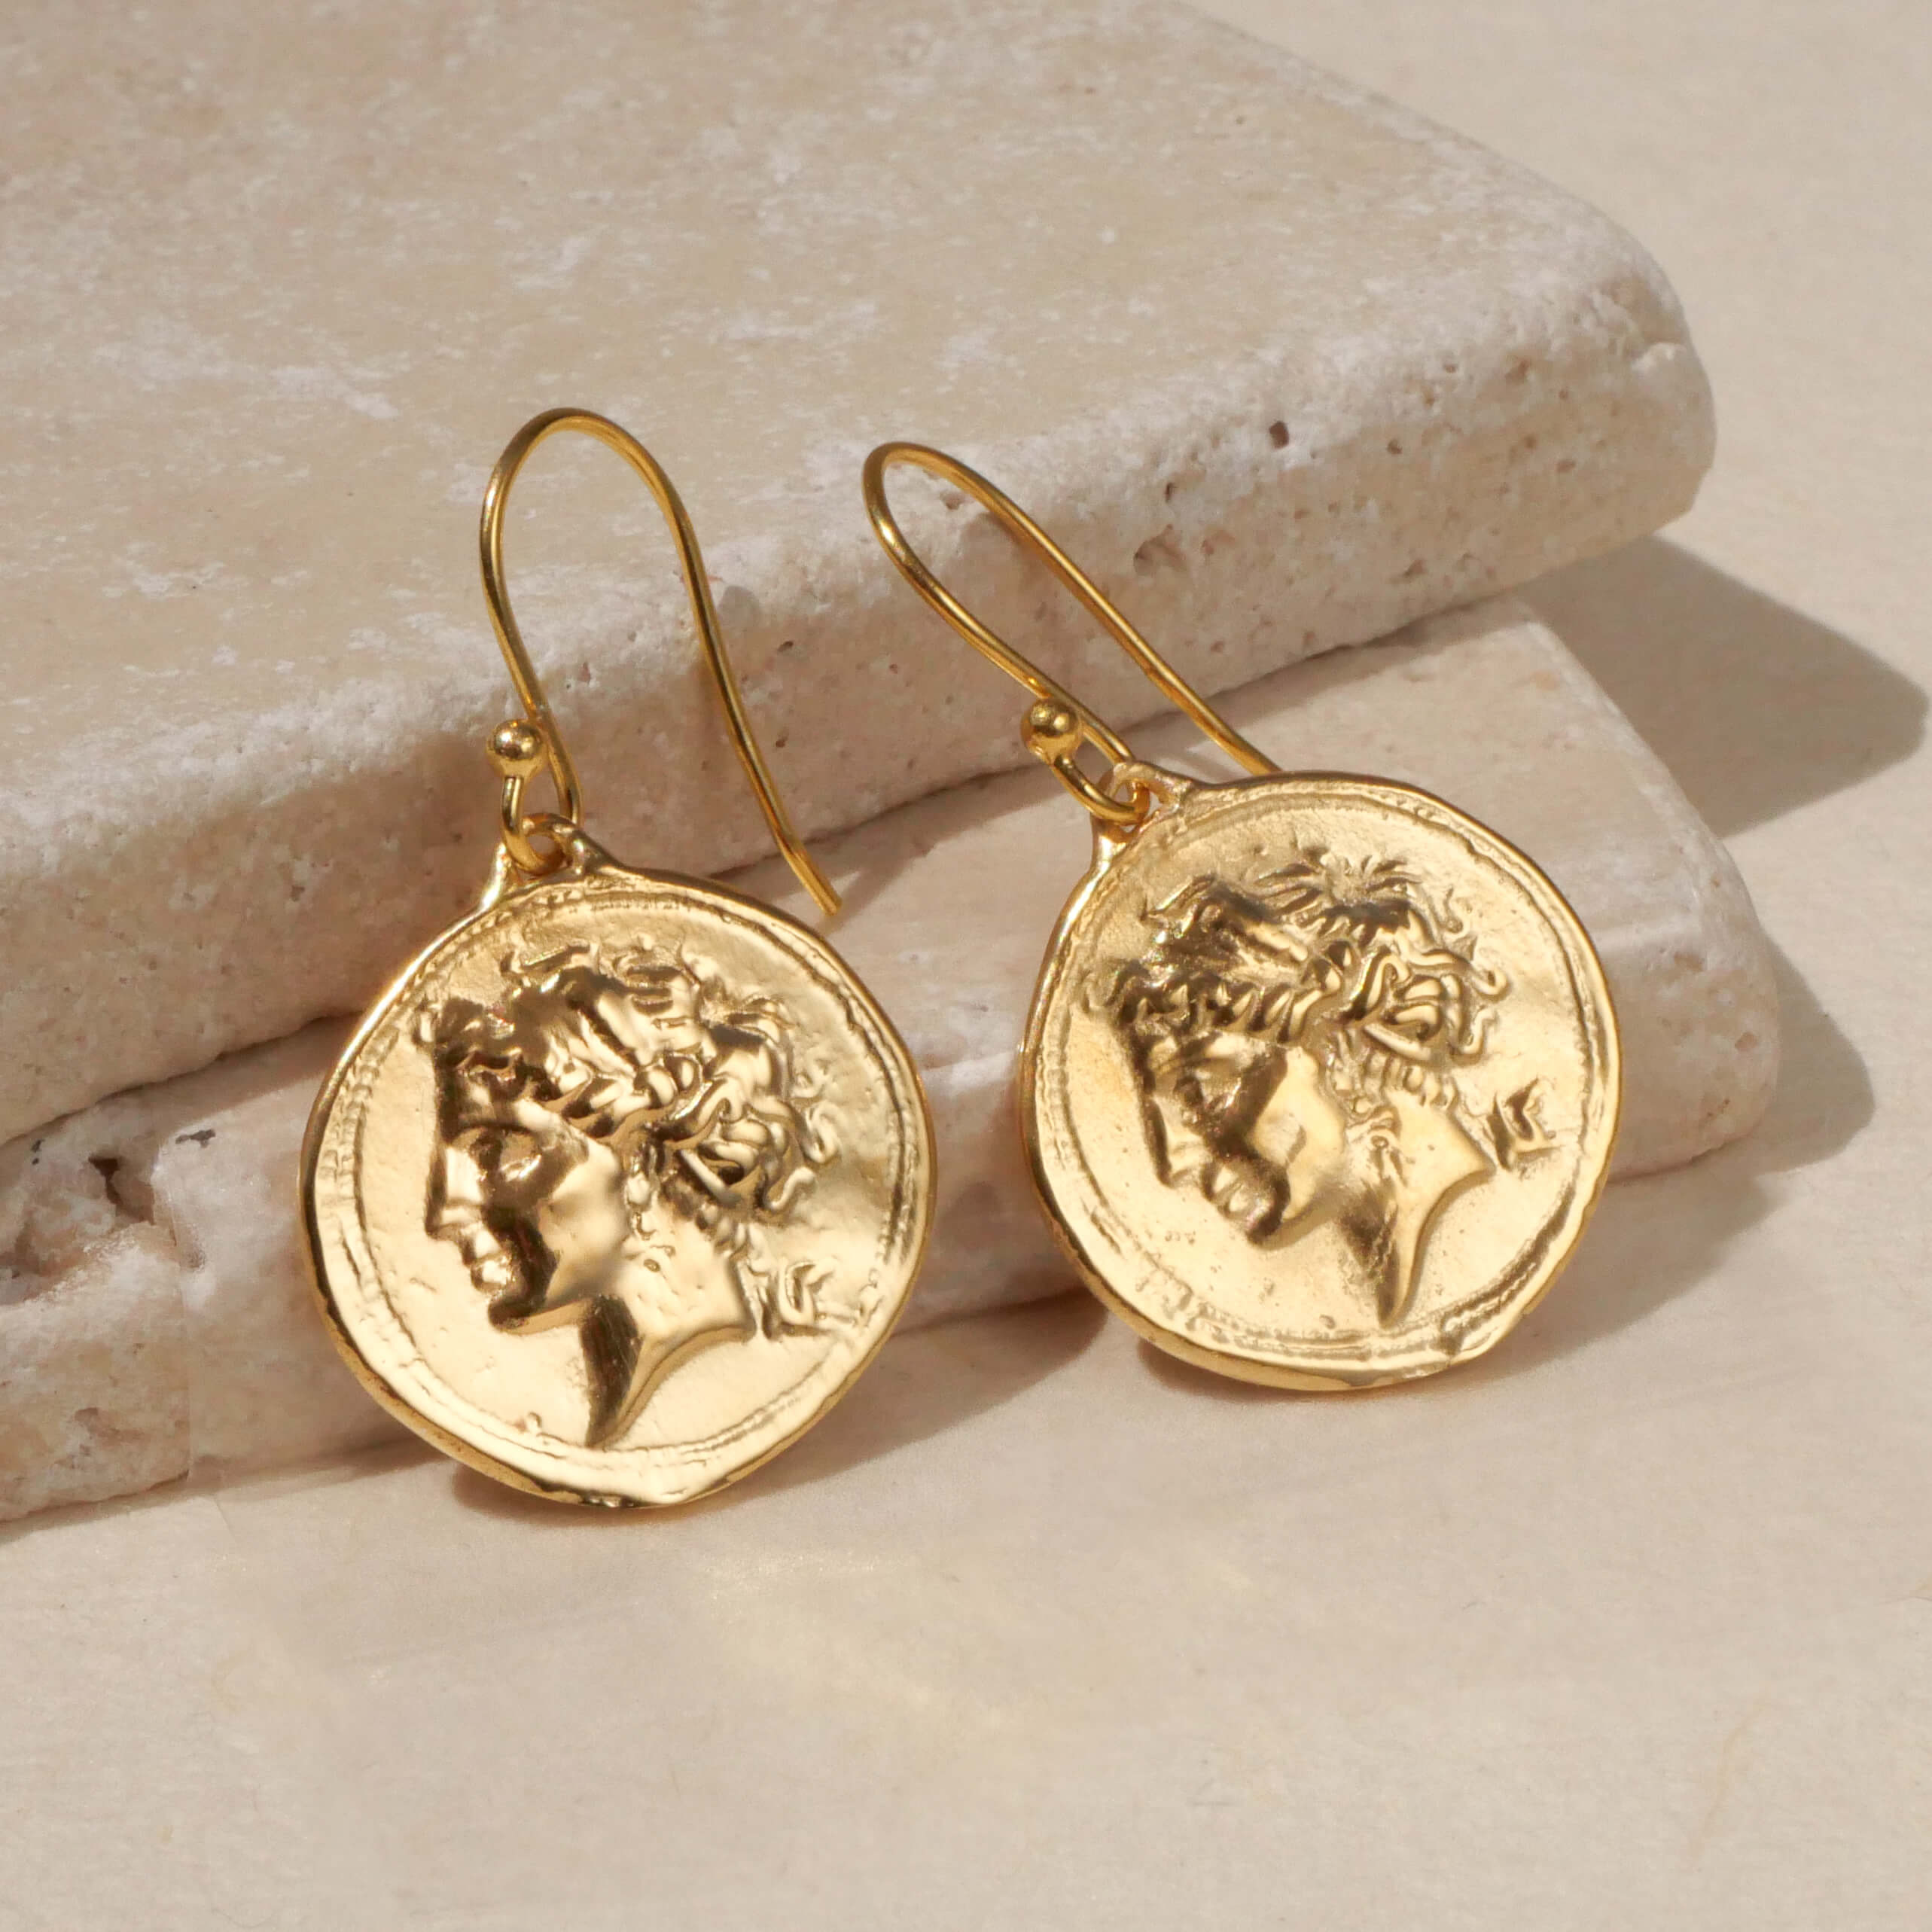 Ohrringe mit antiken Frauenportrait Münzen Chiara, 925er Silber vergoldet - True Nuggets of Love